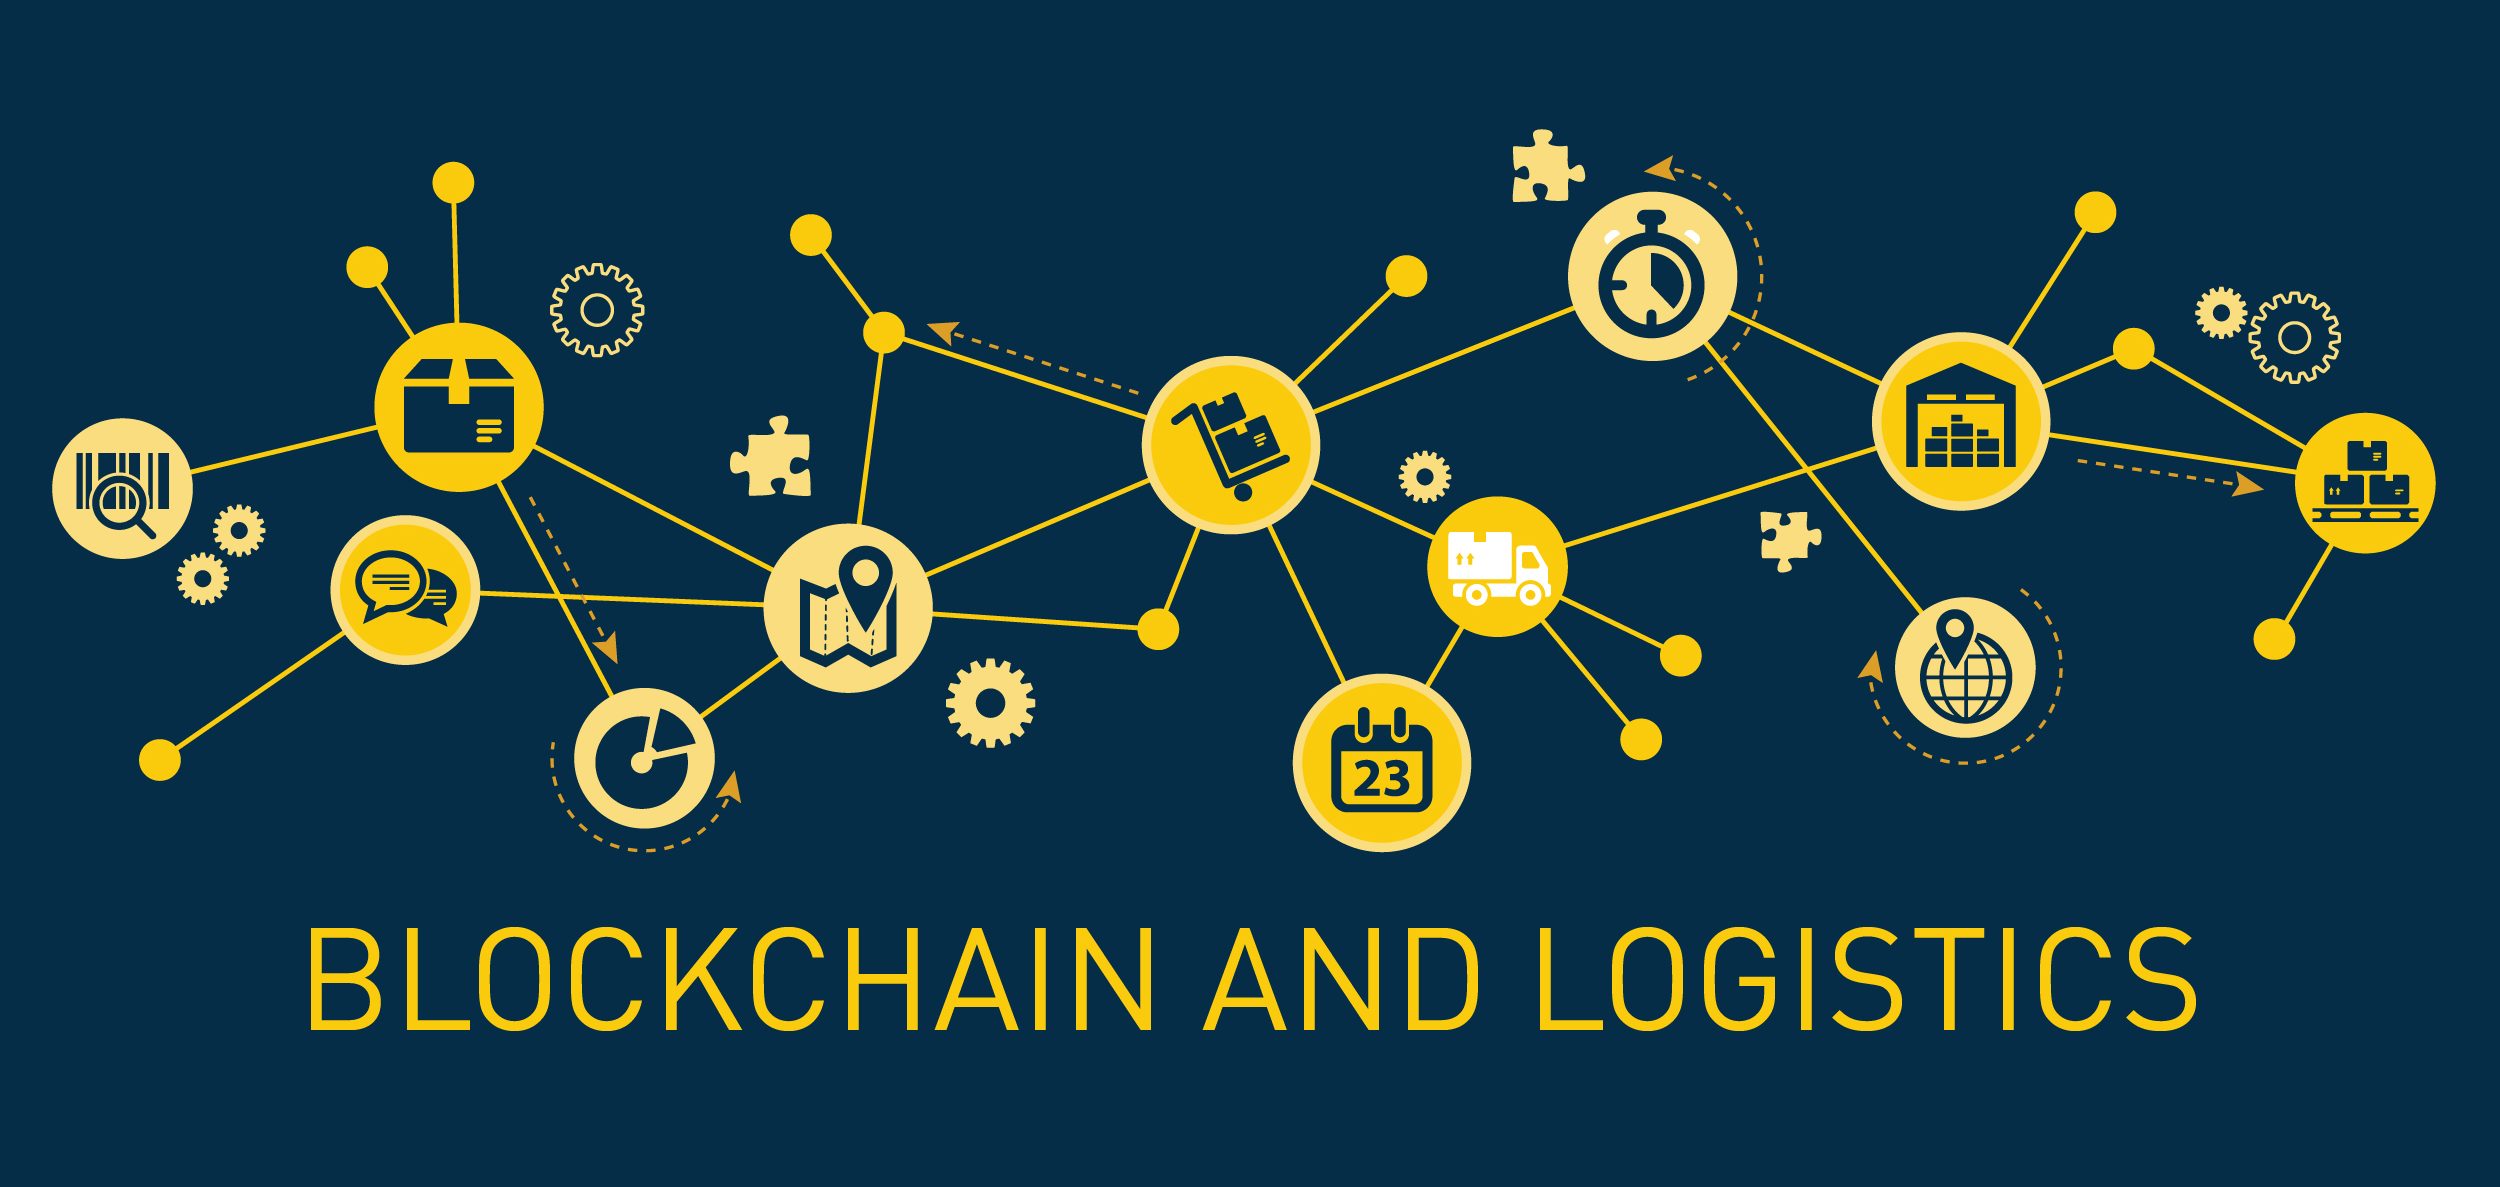 Ứng dụng Blockchain trong Logistics đã mang đến nhiều đột phá mới trong ngành Supply Chain